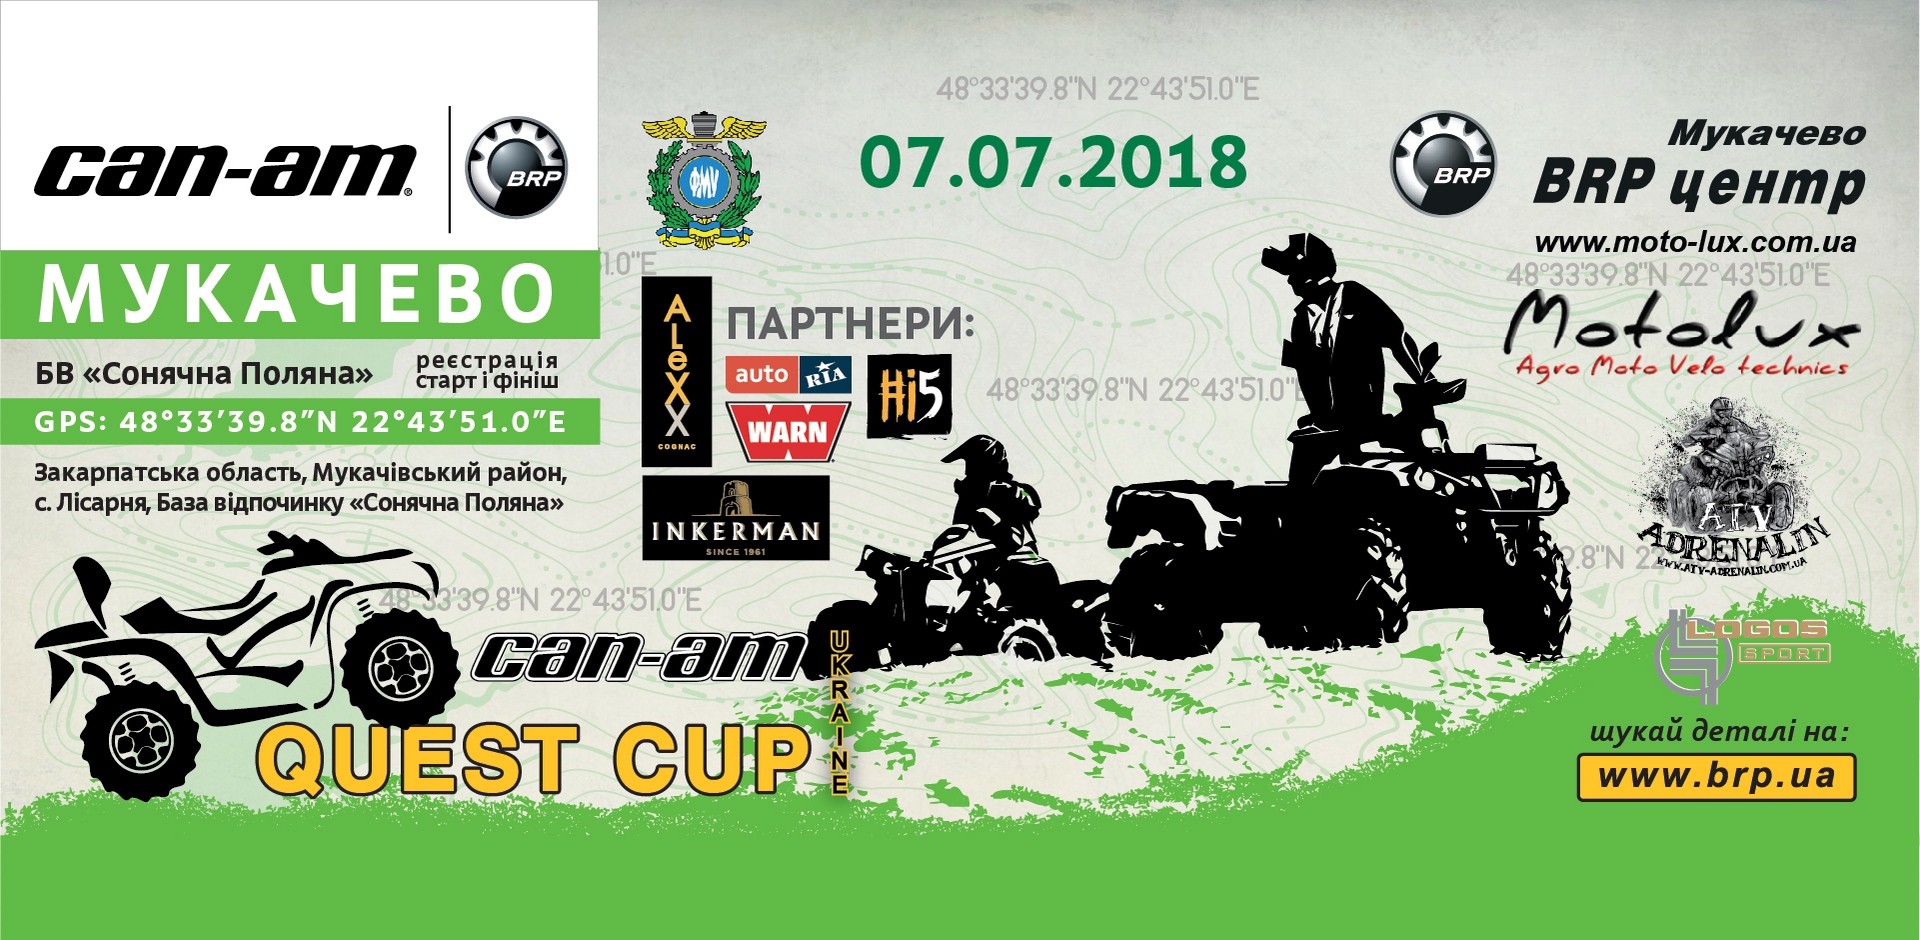 Серія «CAN-AM QUEST CUP 2018»! 7 липня – четвертий етап – Мукачево.